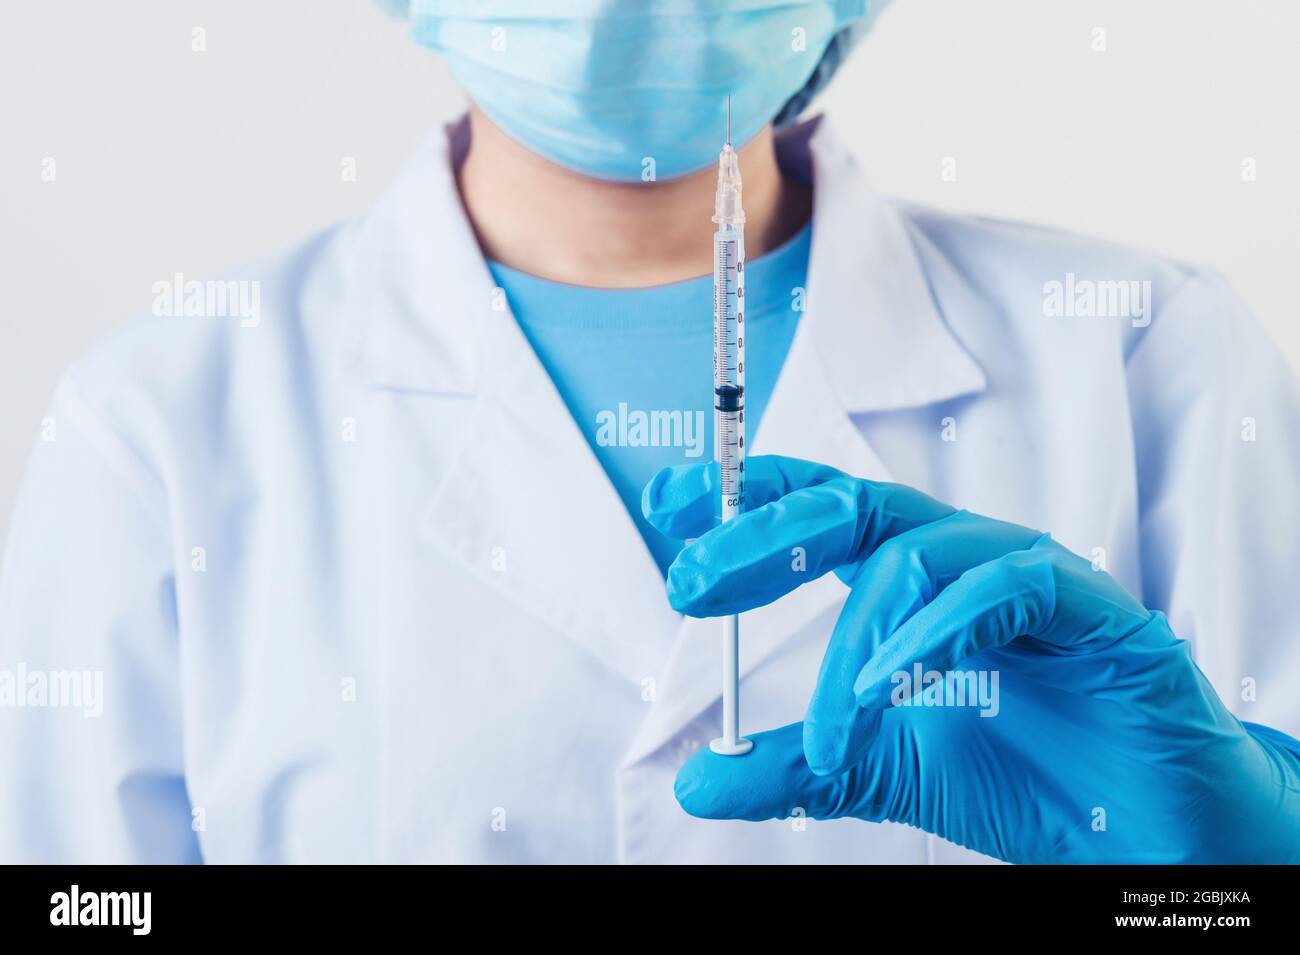 Siringa closeup ago per iniezione di vaccino covid-19 in uno scienziato professionista o medico mano in laboratorio per il trattamento con maschera guanti da laboratorio camice su bianco Foto Stock